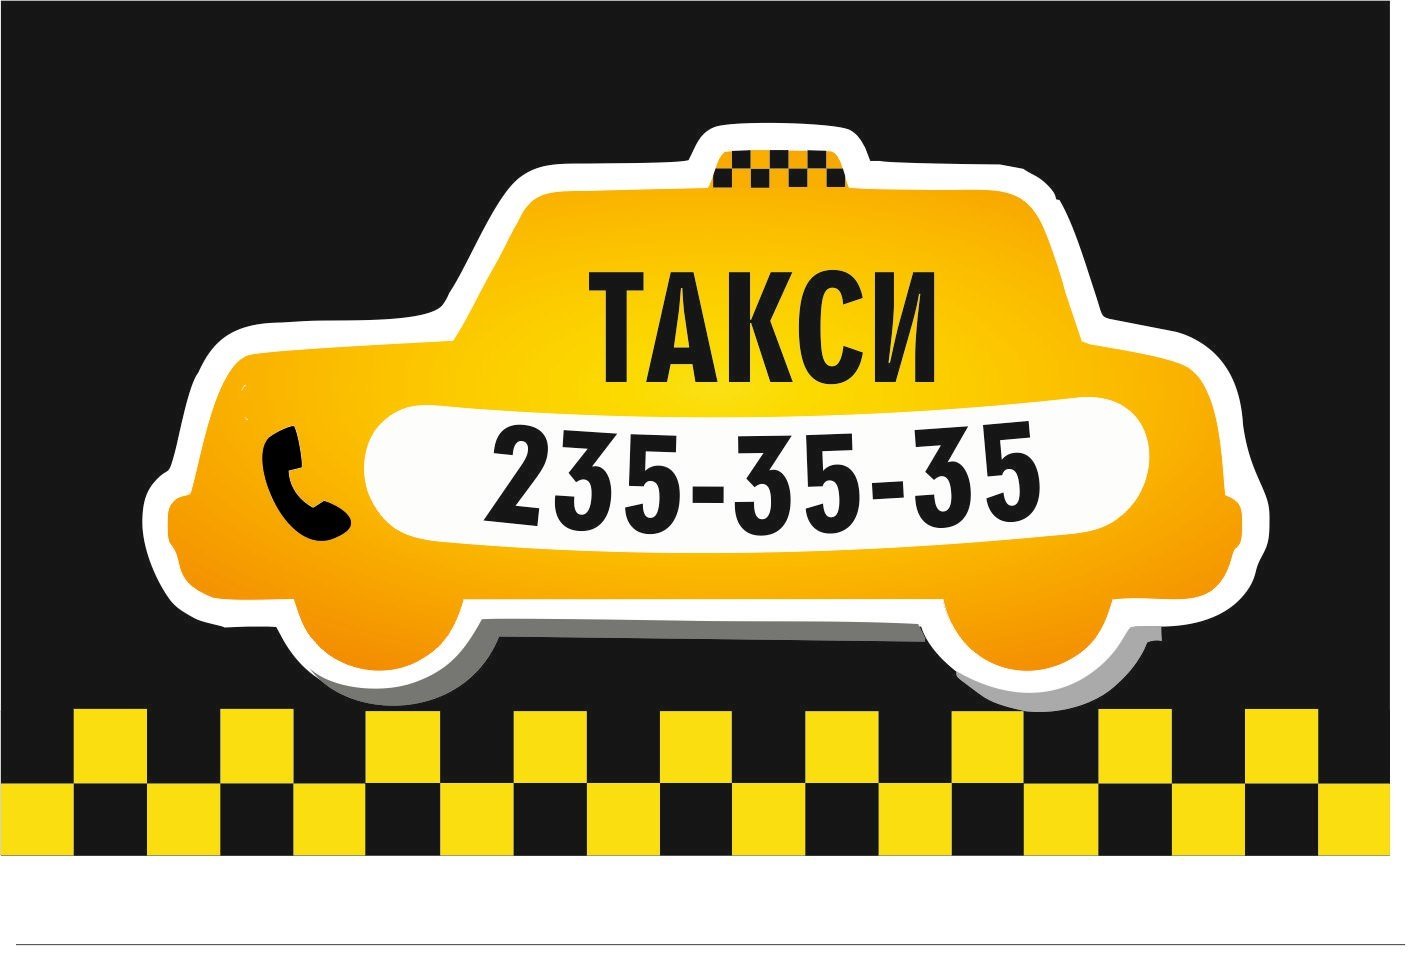 Вай такси телефон. Такси. Номер такси. Номера таксистов. Реклама такси.